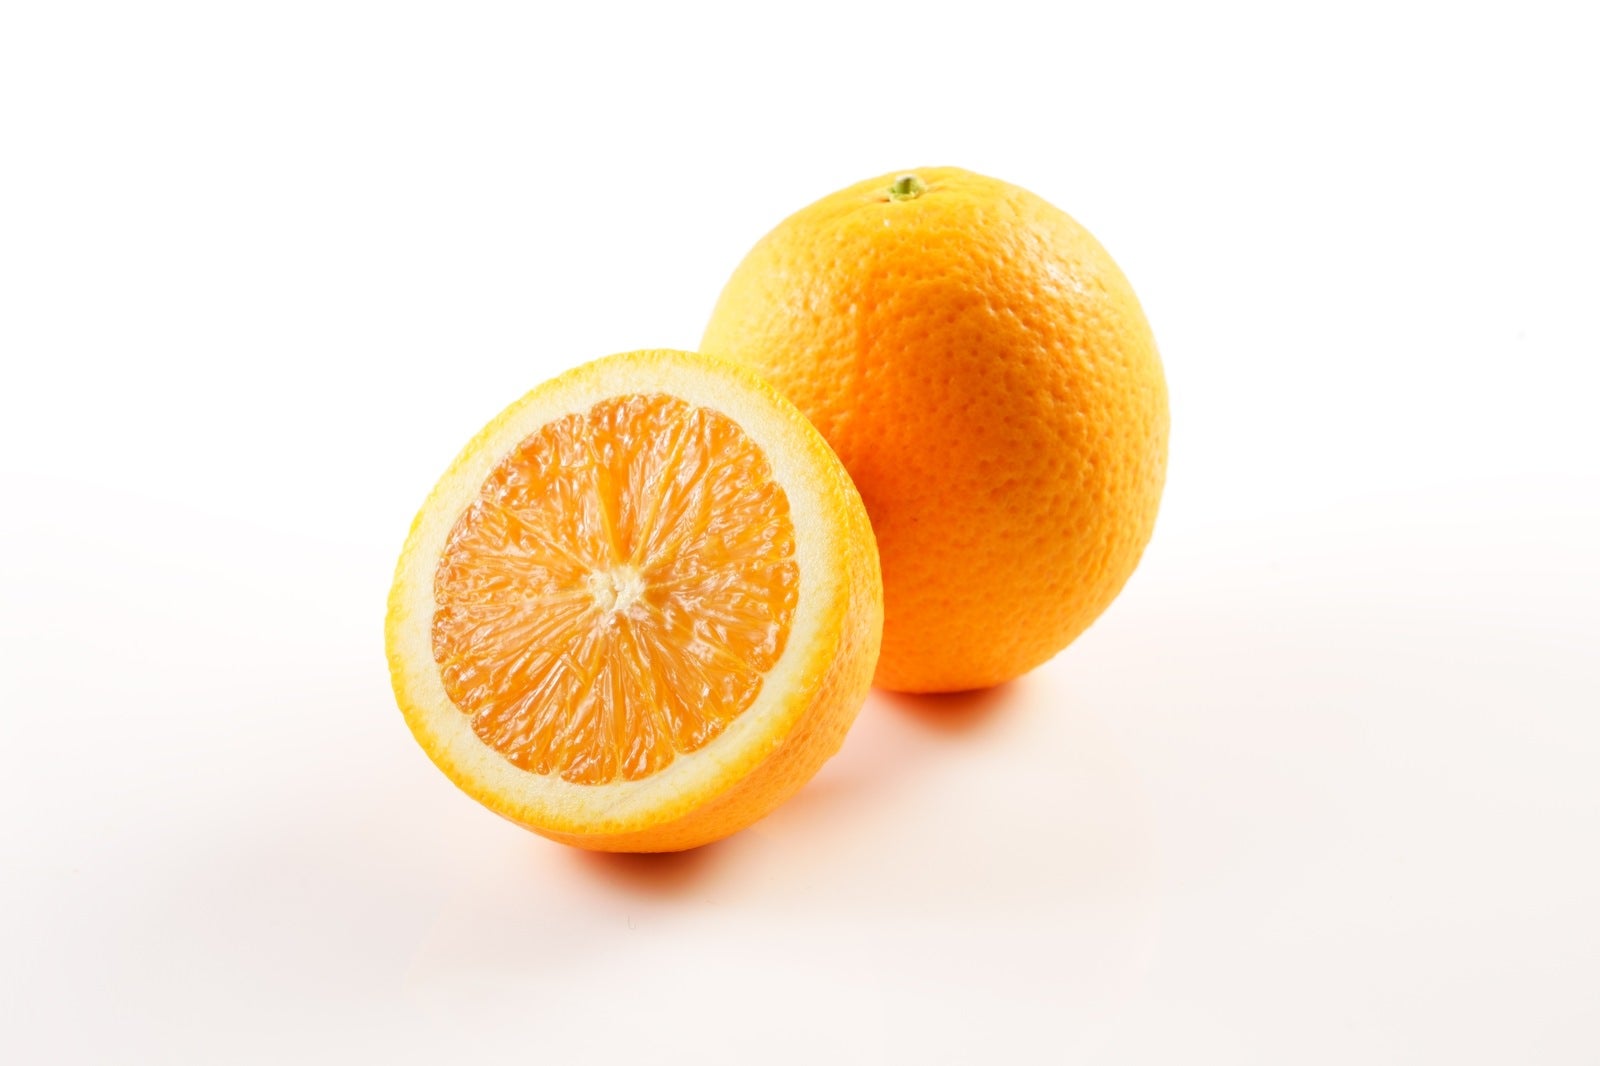 「カット前と1/2カットのオレンジ」の写真